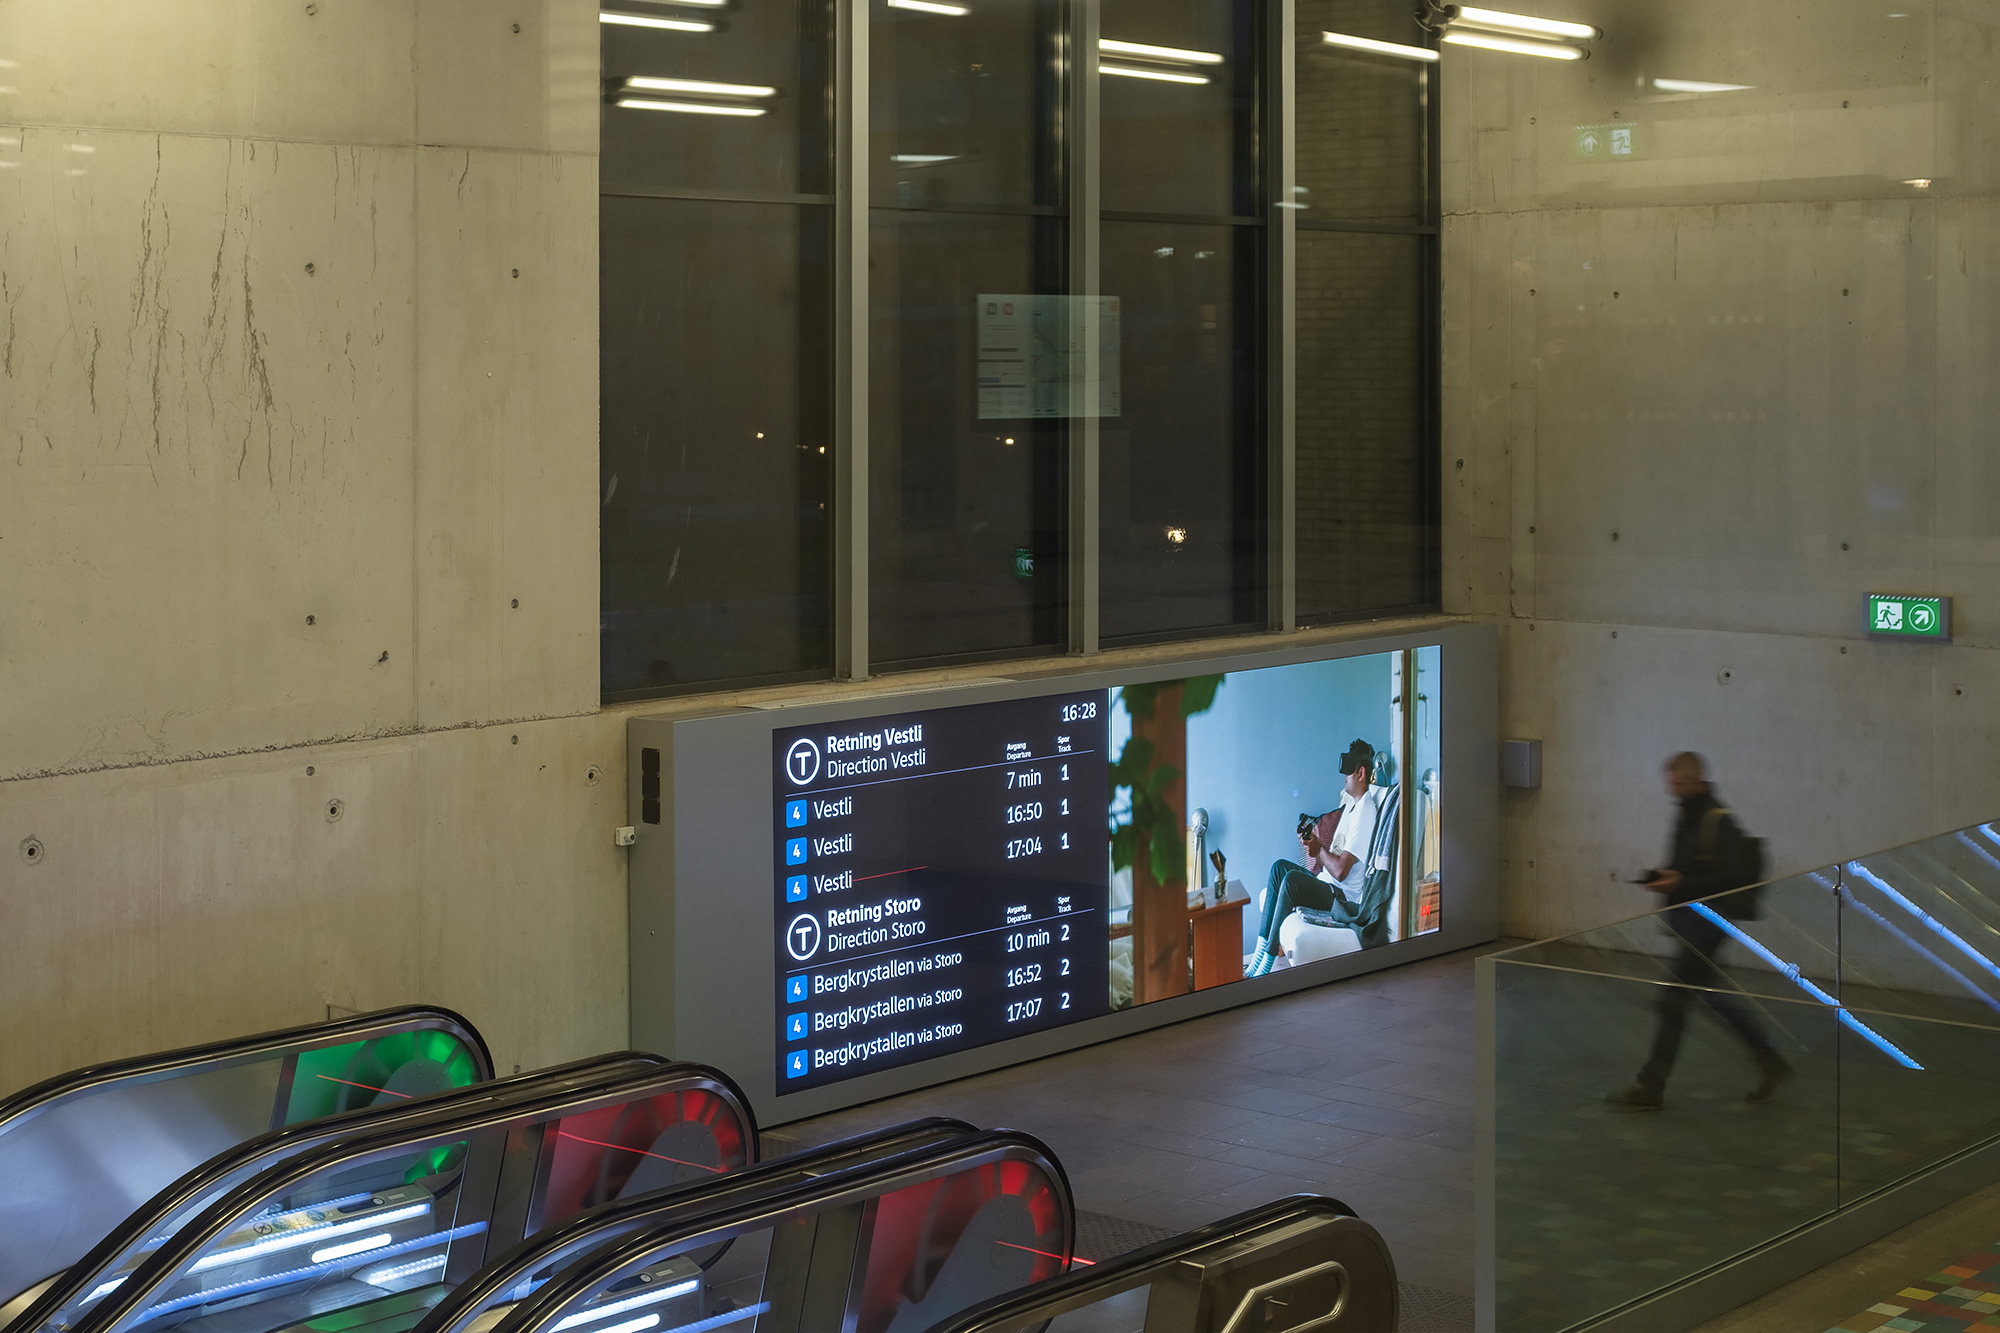 Installed at Løren T-banestation (subway station)